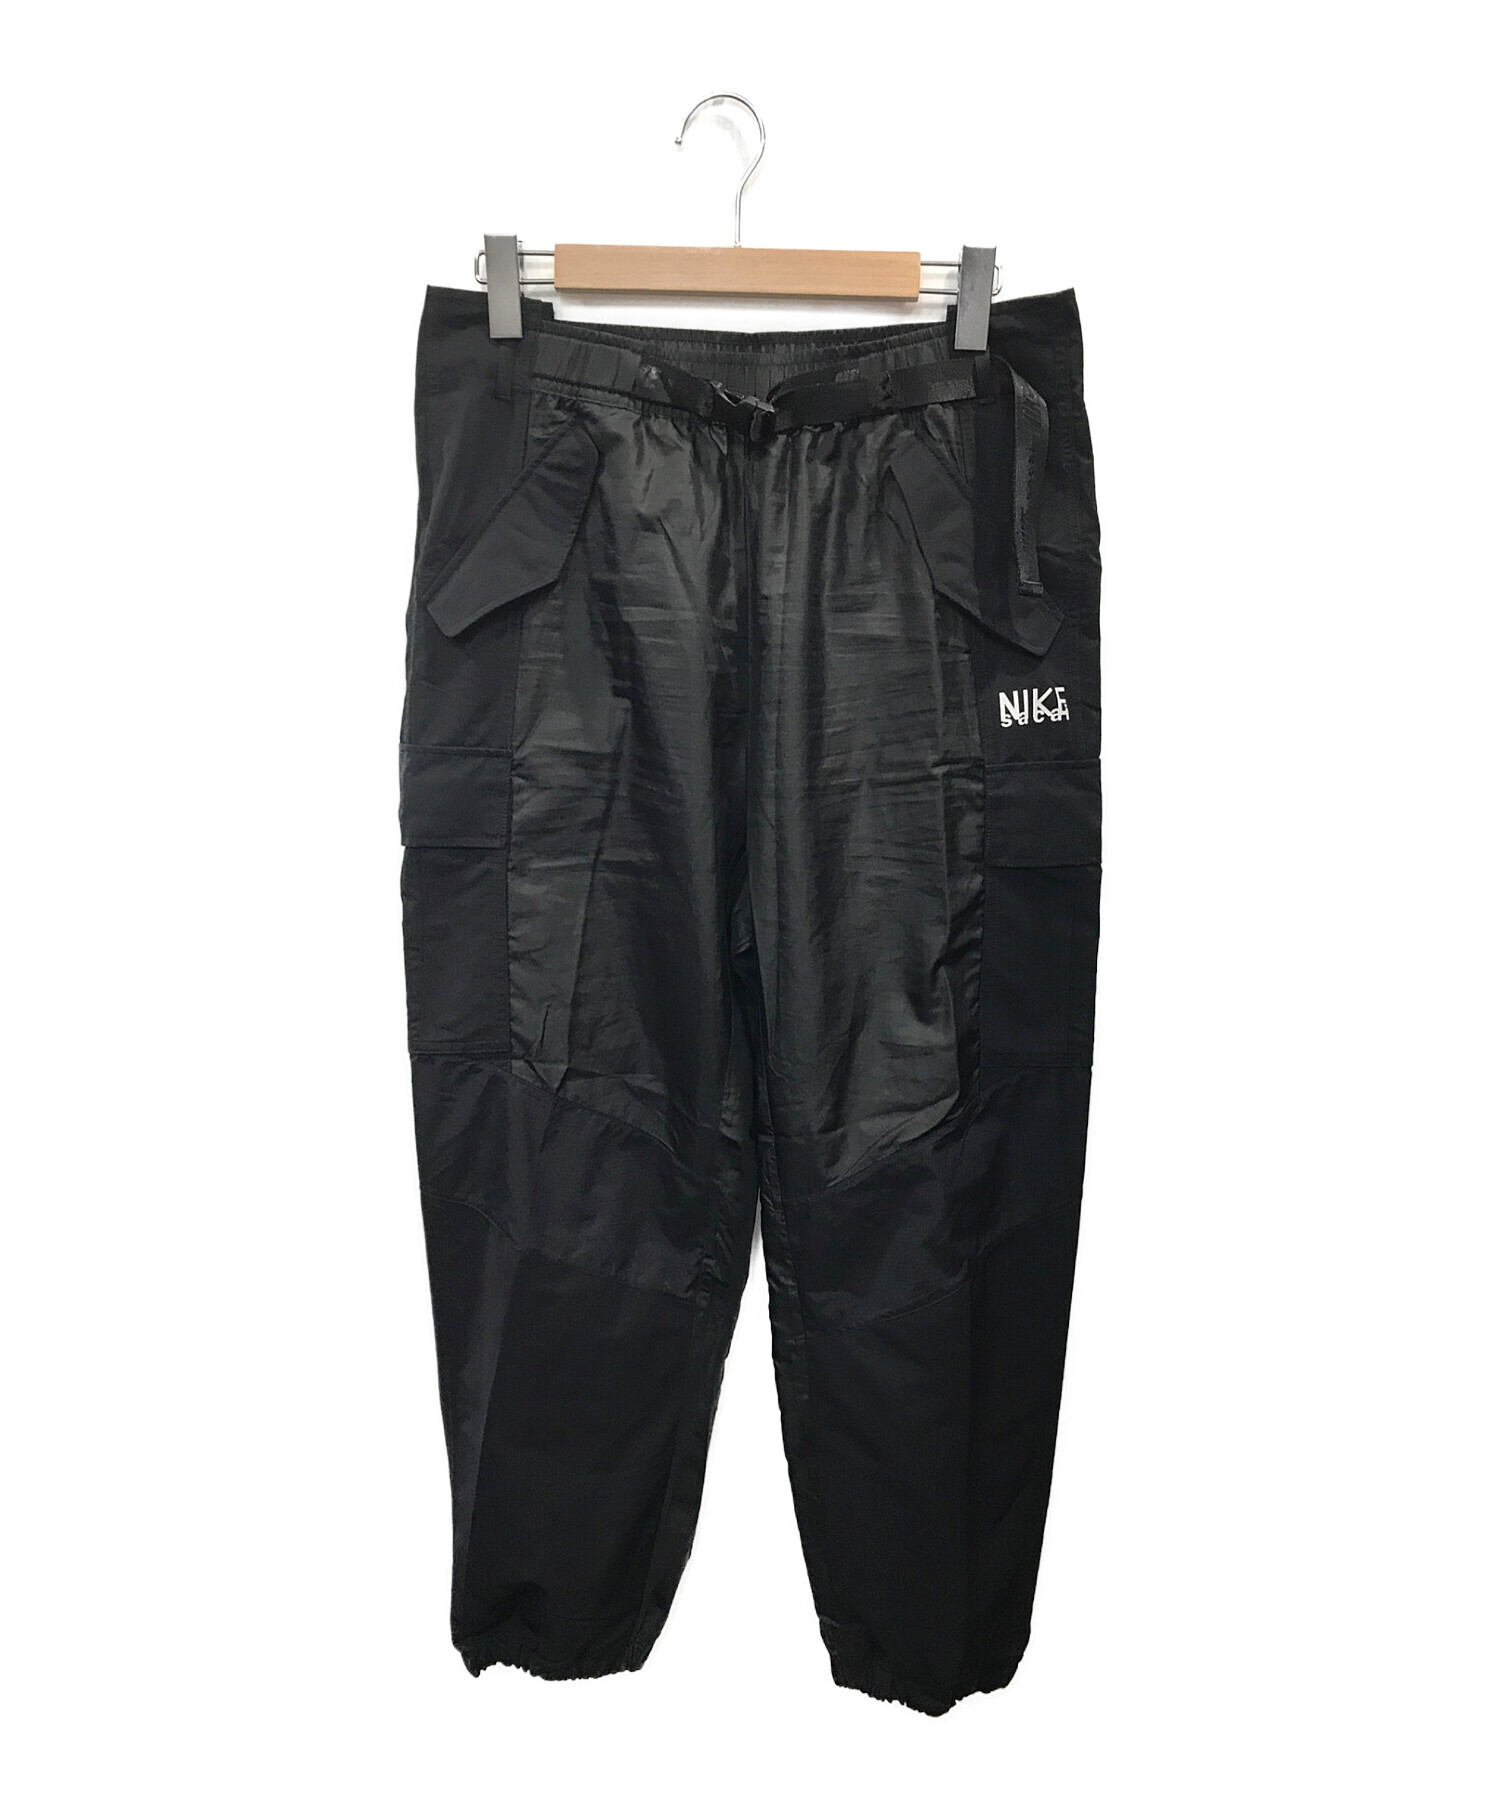 sacai (サカイ) NIKE (ナイキ) AS U NRG Pant ブラック サイズ:XL